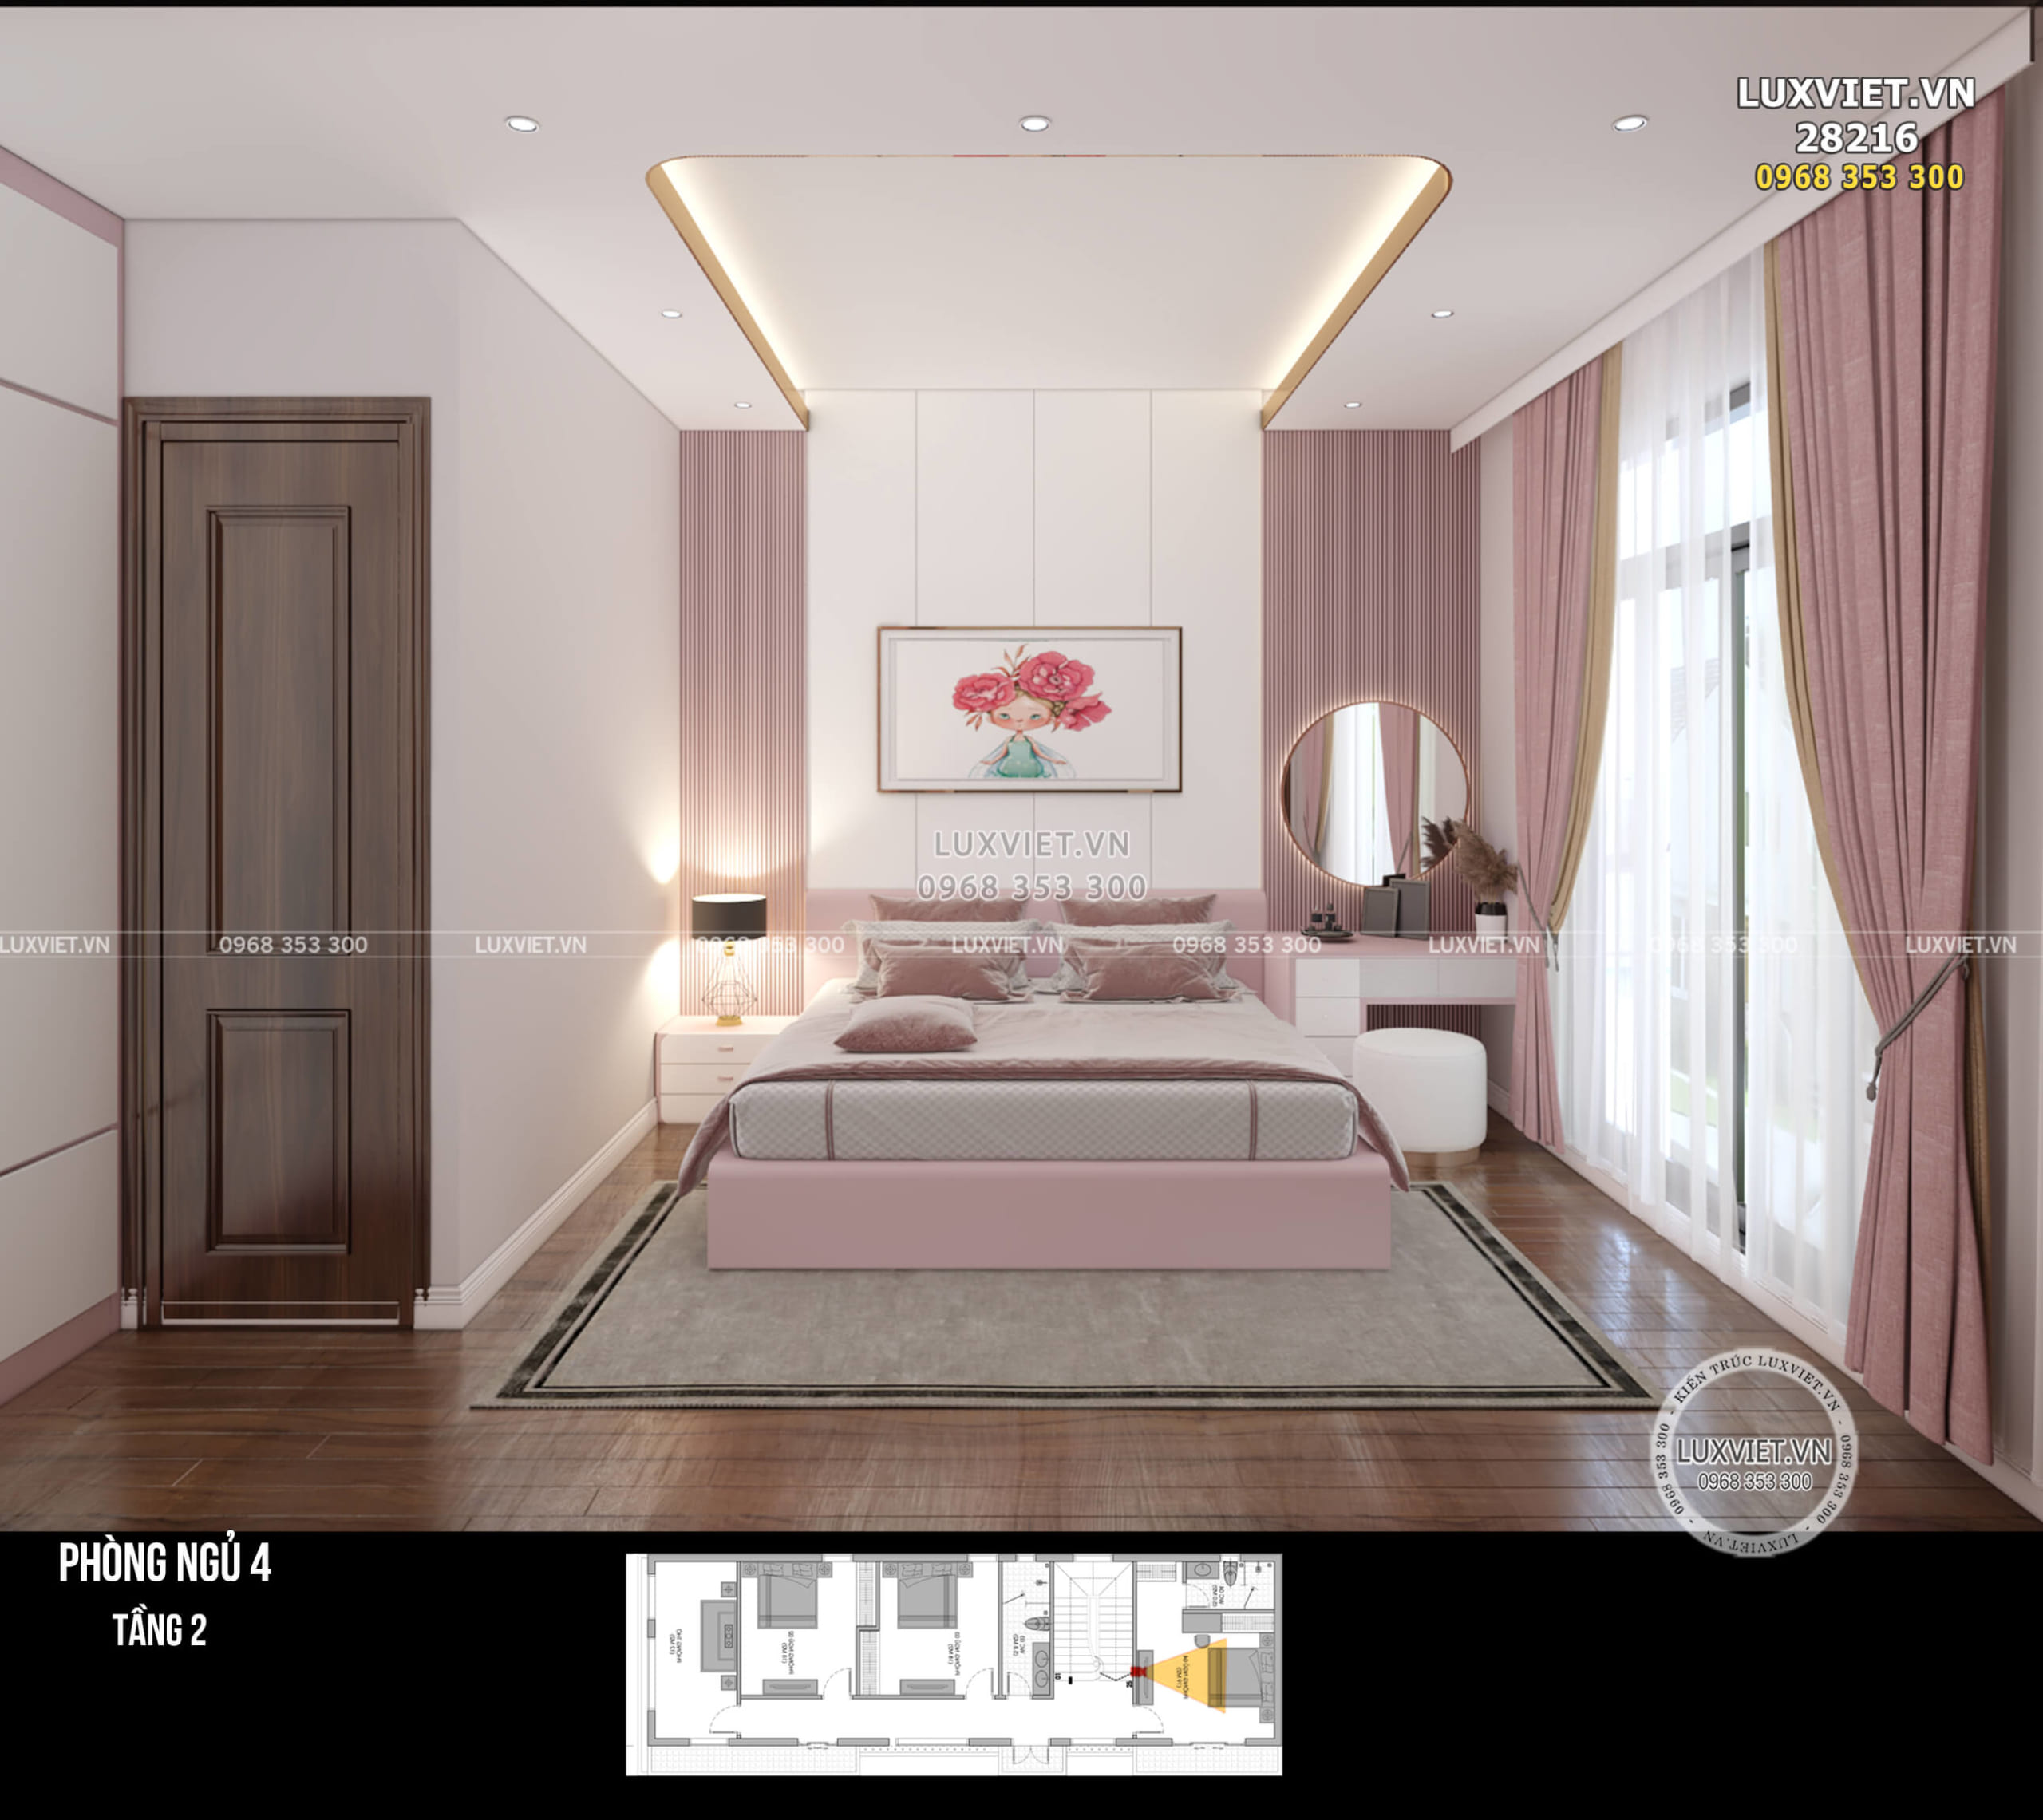 Phòng ngủ được thiết kế đồng bộ màu sắc từ rèm cửa, giường ngủ, bàn trang điểm